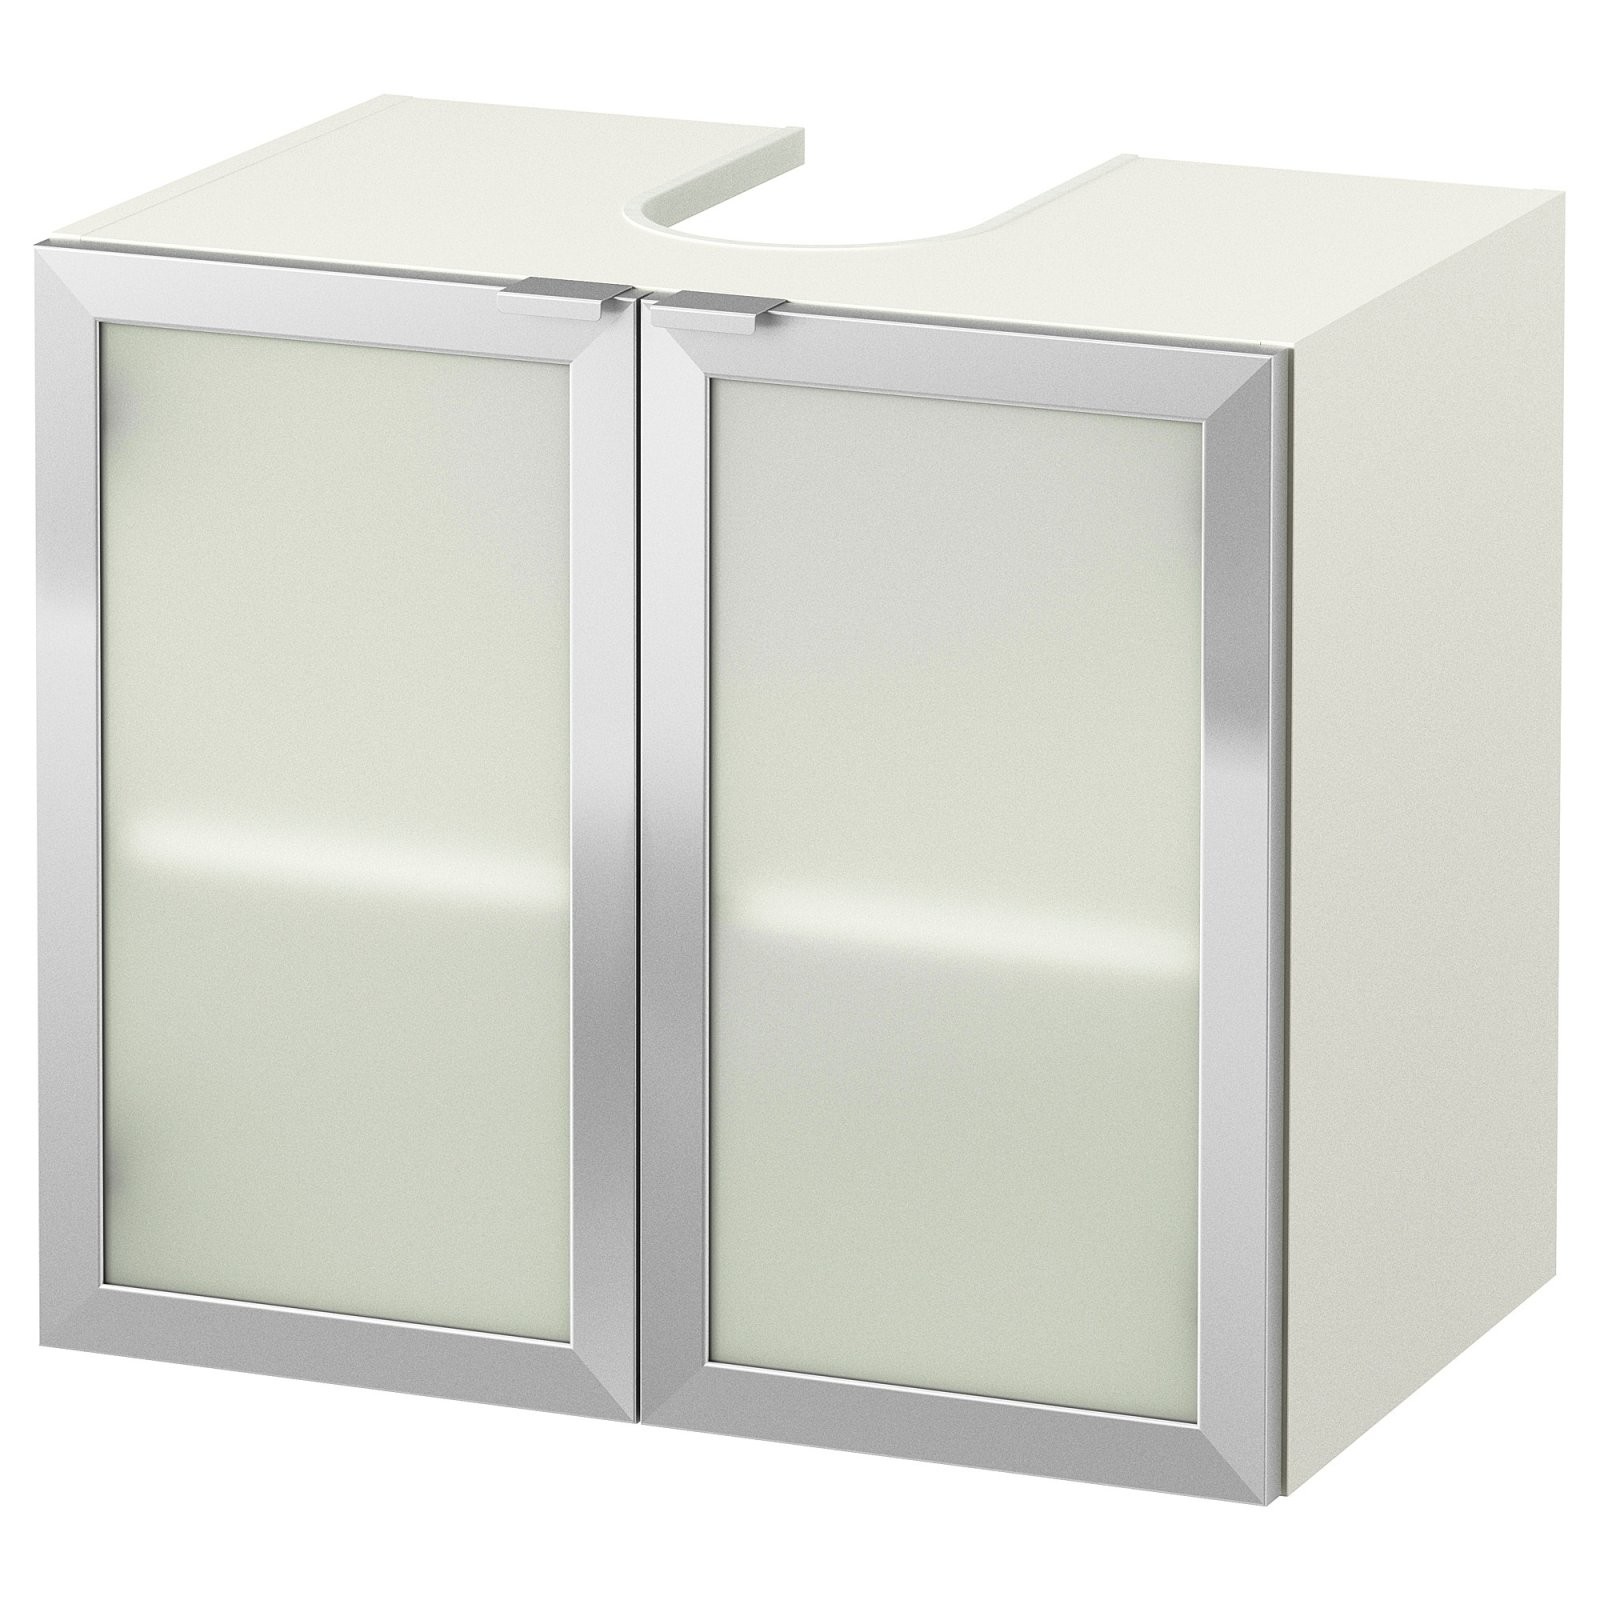 Lillången Waschbeckenunterschrank 2 Türen  Weiß Aluminium  Ikea von Waschbecken Mit Unterschrank Ikea Photo